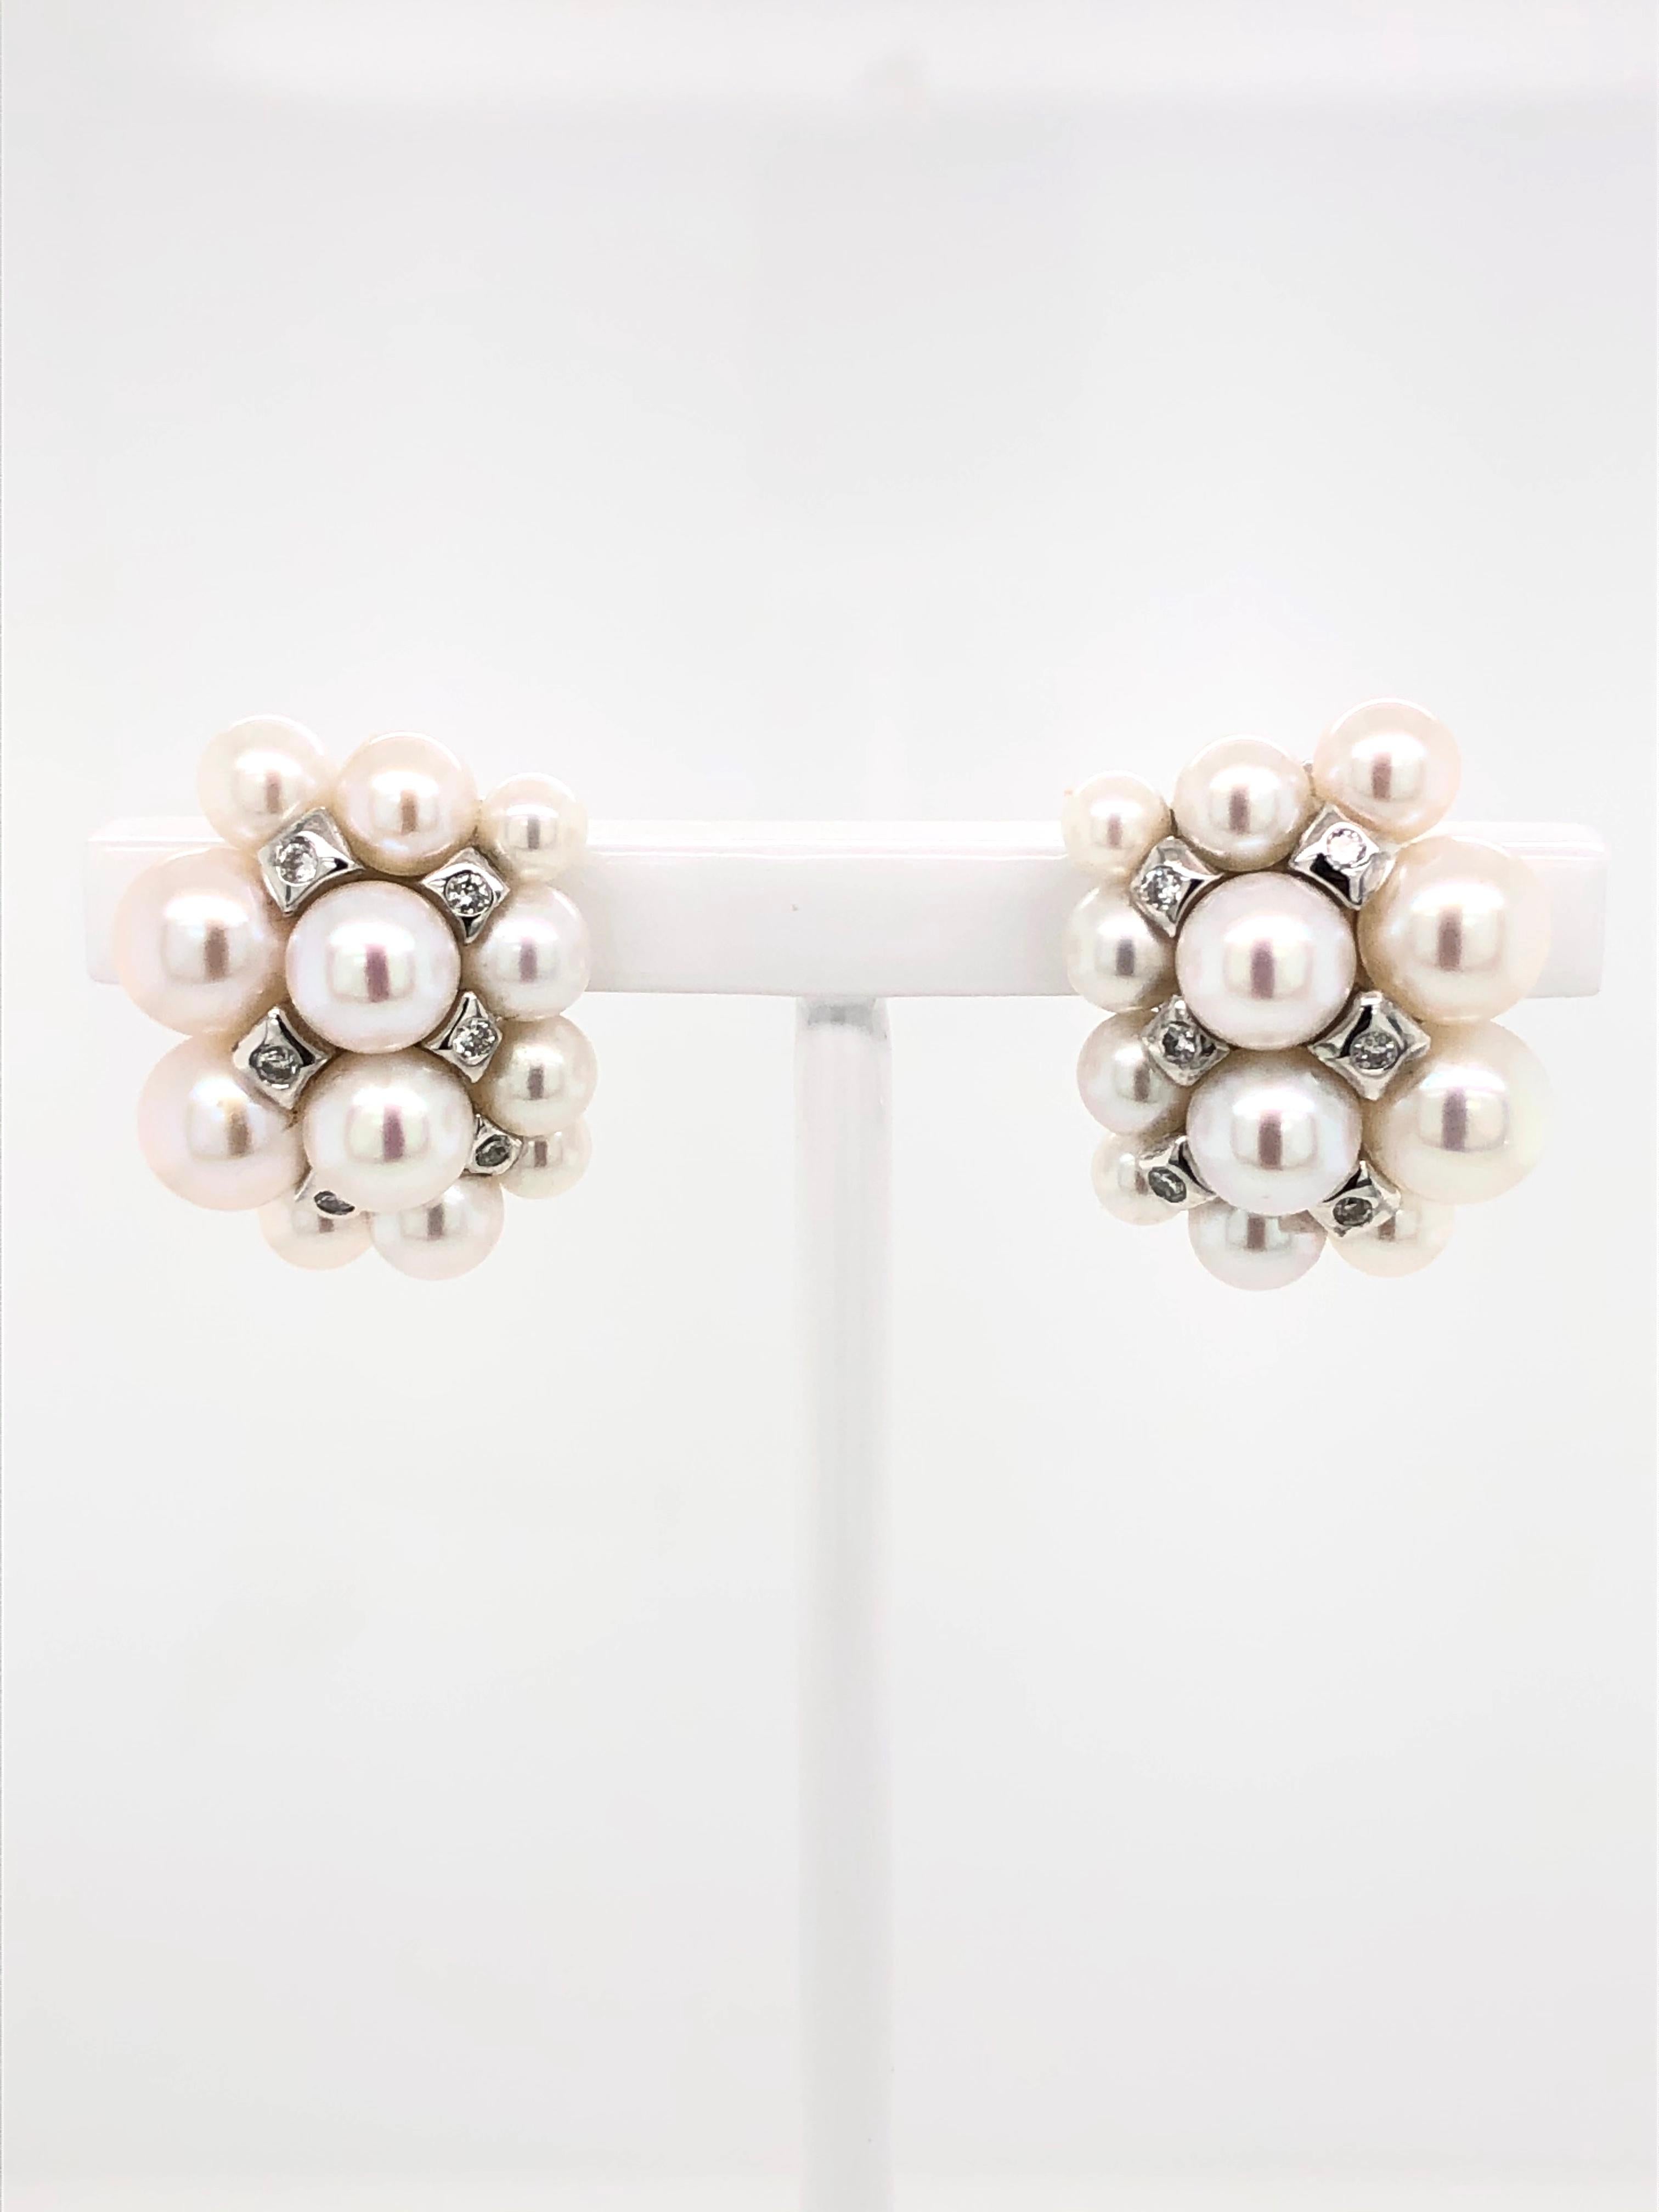 Women's or Men's Akoya Pearls with White Diamonds on White Gold 18 Karat Earrings